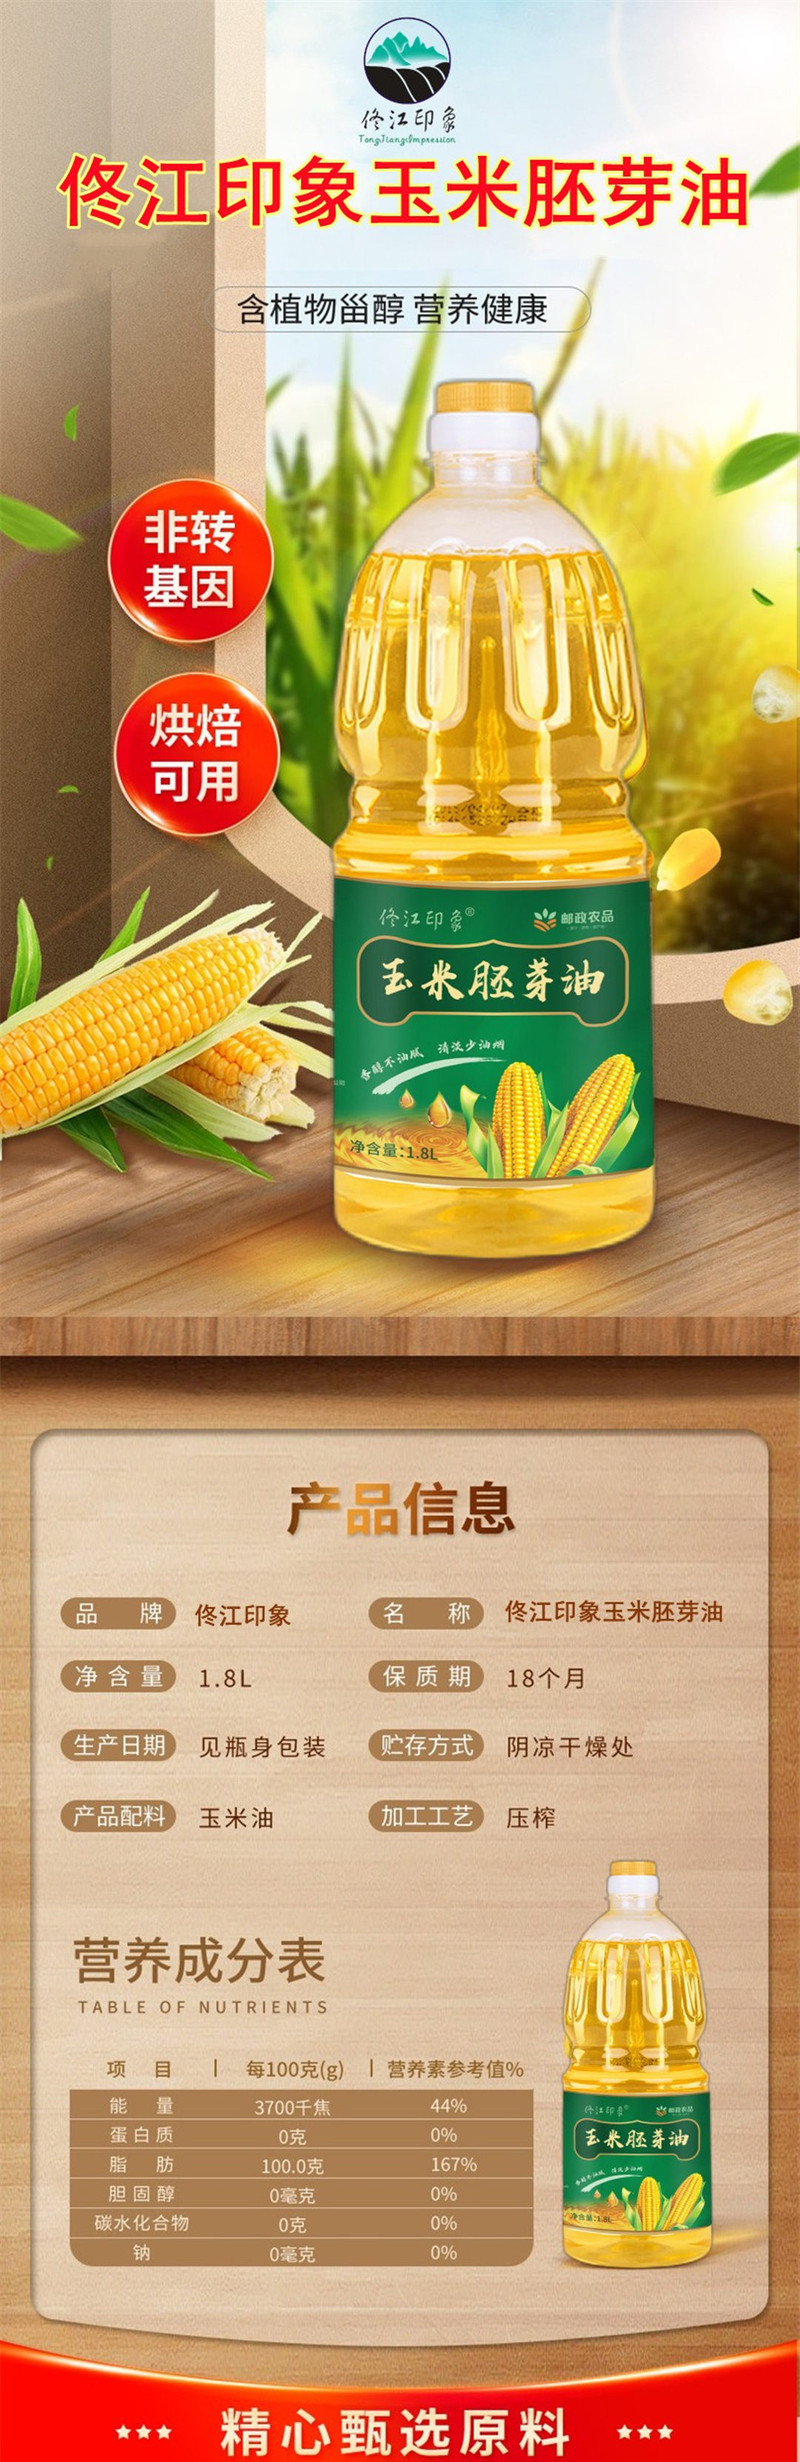 佟江印象 玉米油1.8L